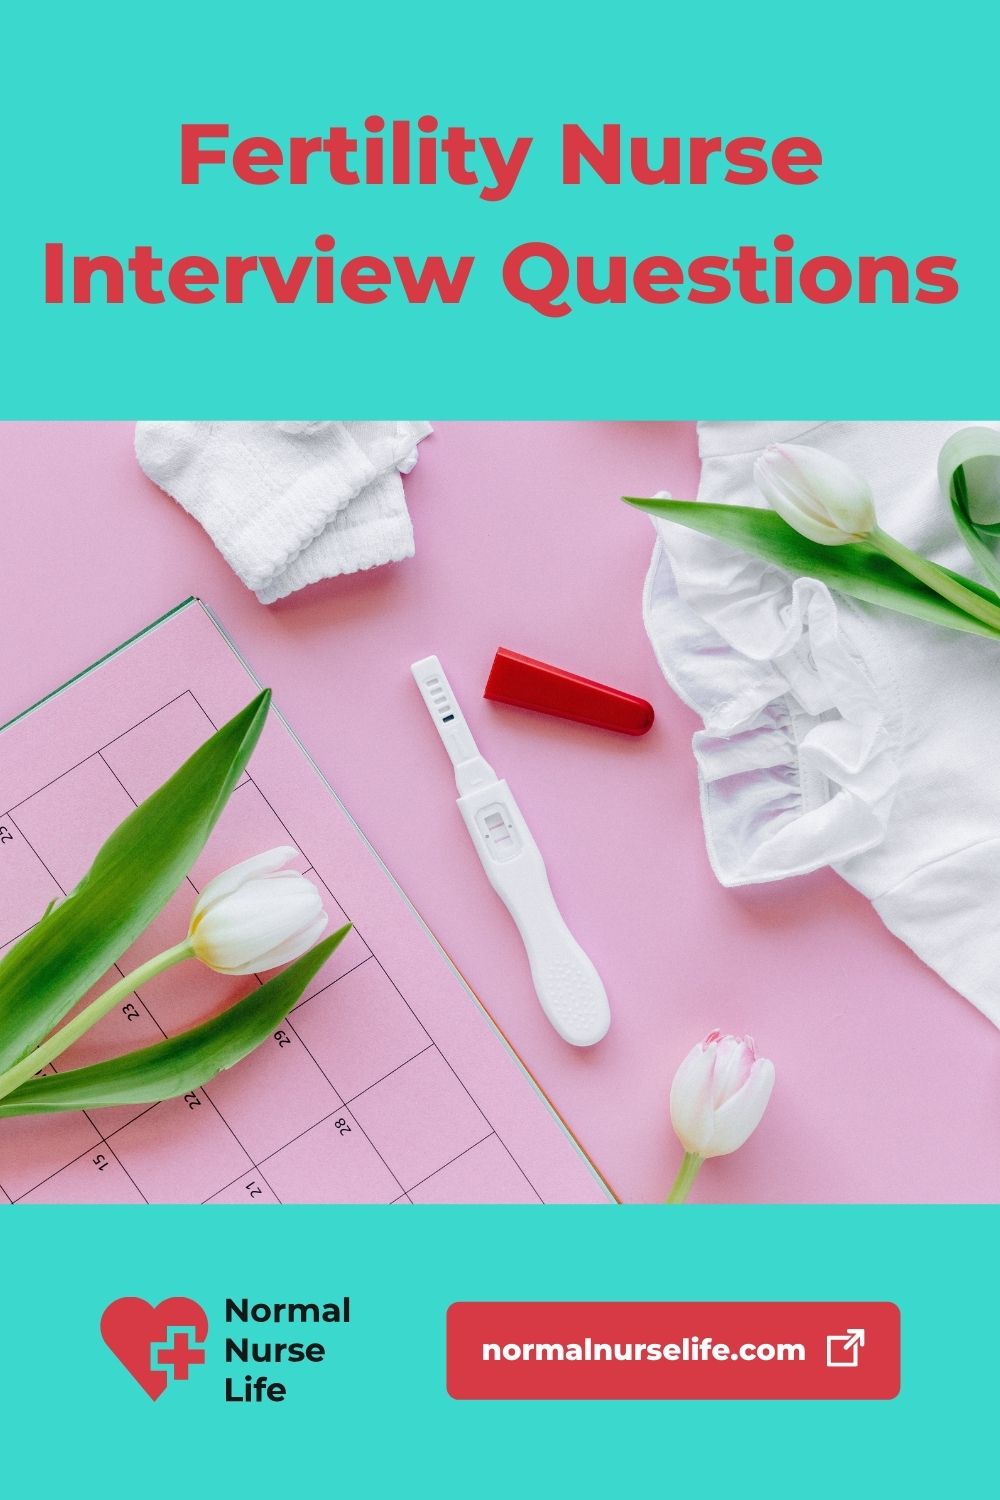 Interview questions for fertility nurses